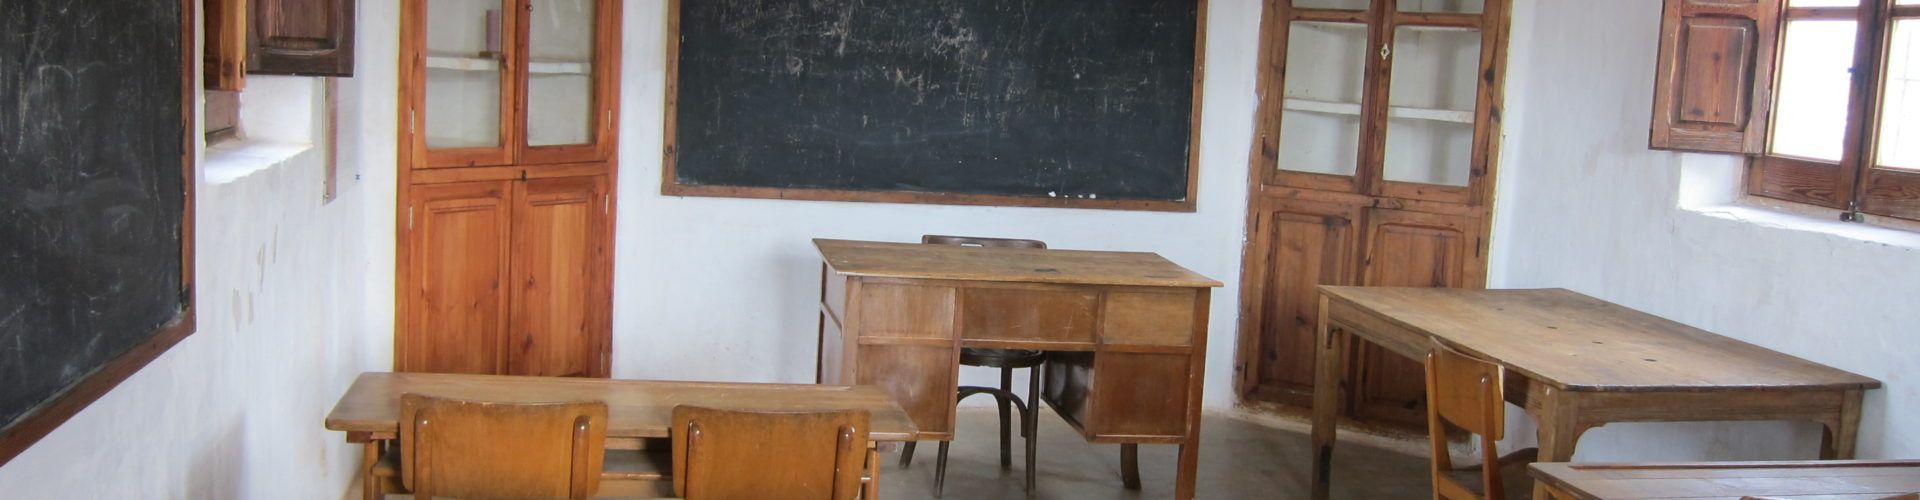 Jornades sobre escoles rurals a Benassal